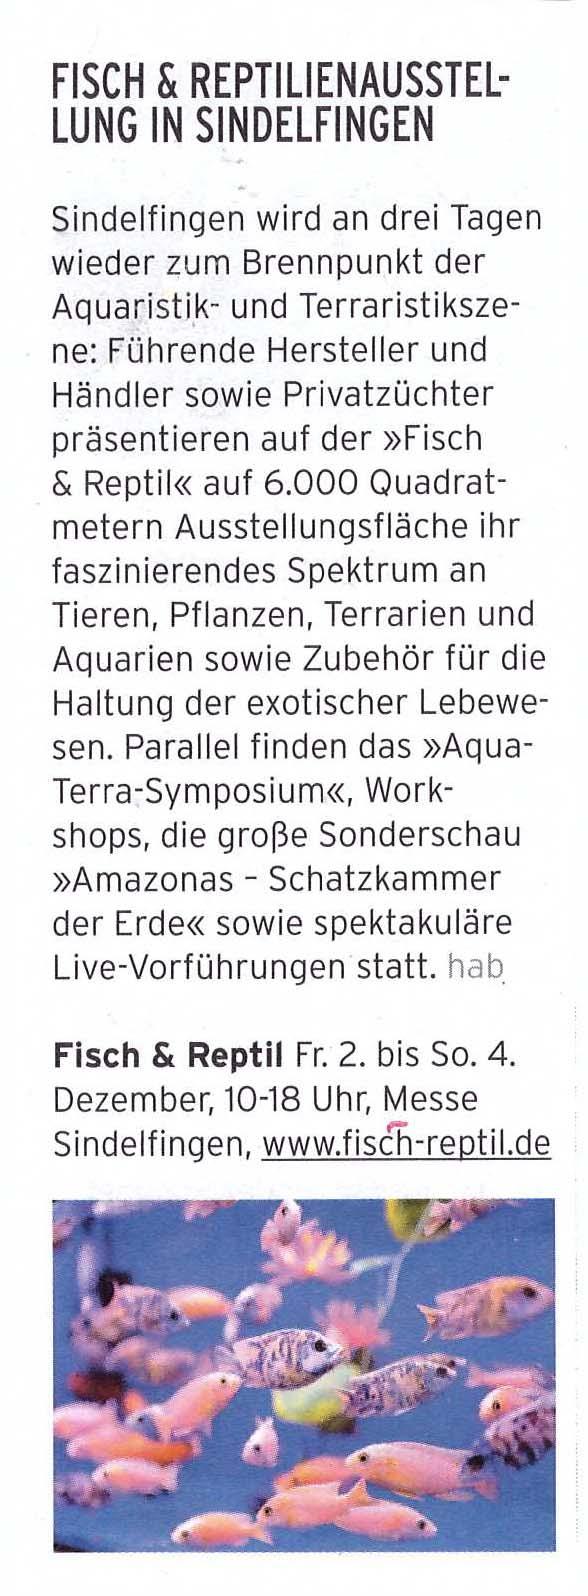 Thema / : Fisch & Reptil 2016 Moritz Das Stadtmagazin Unterausgaben: Ludwigsburg